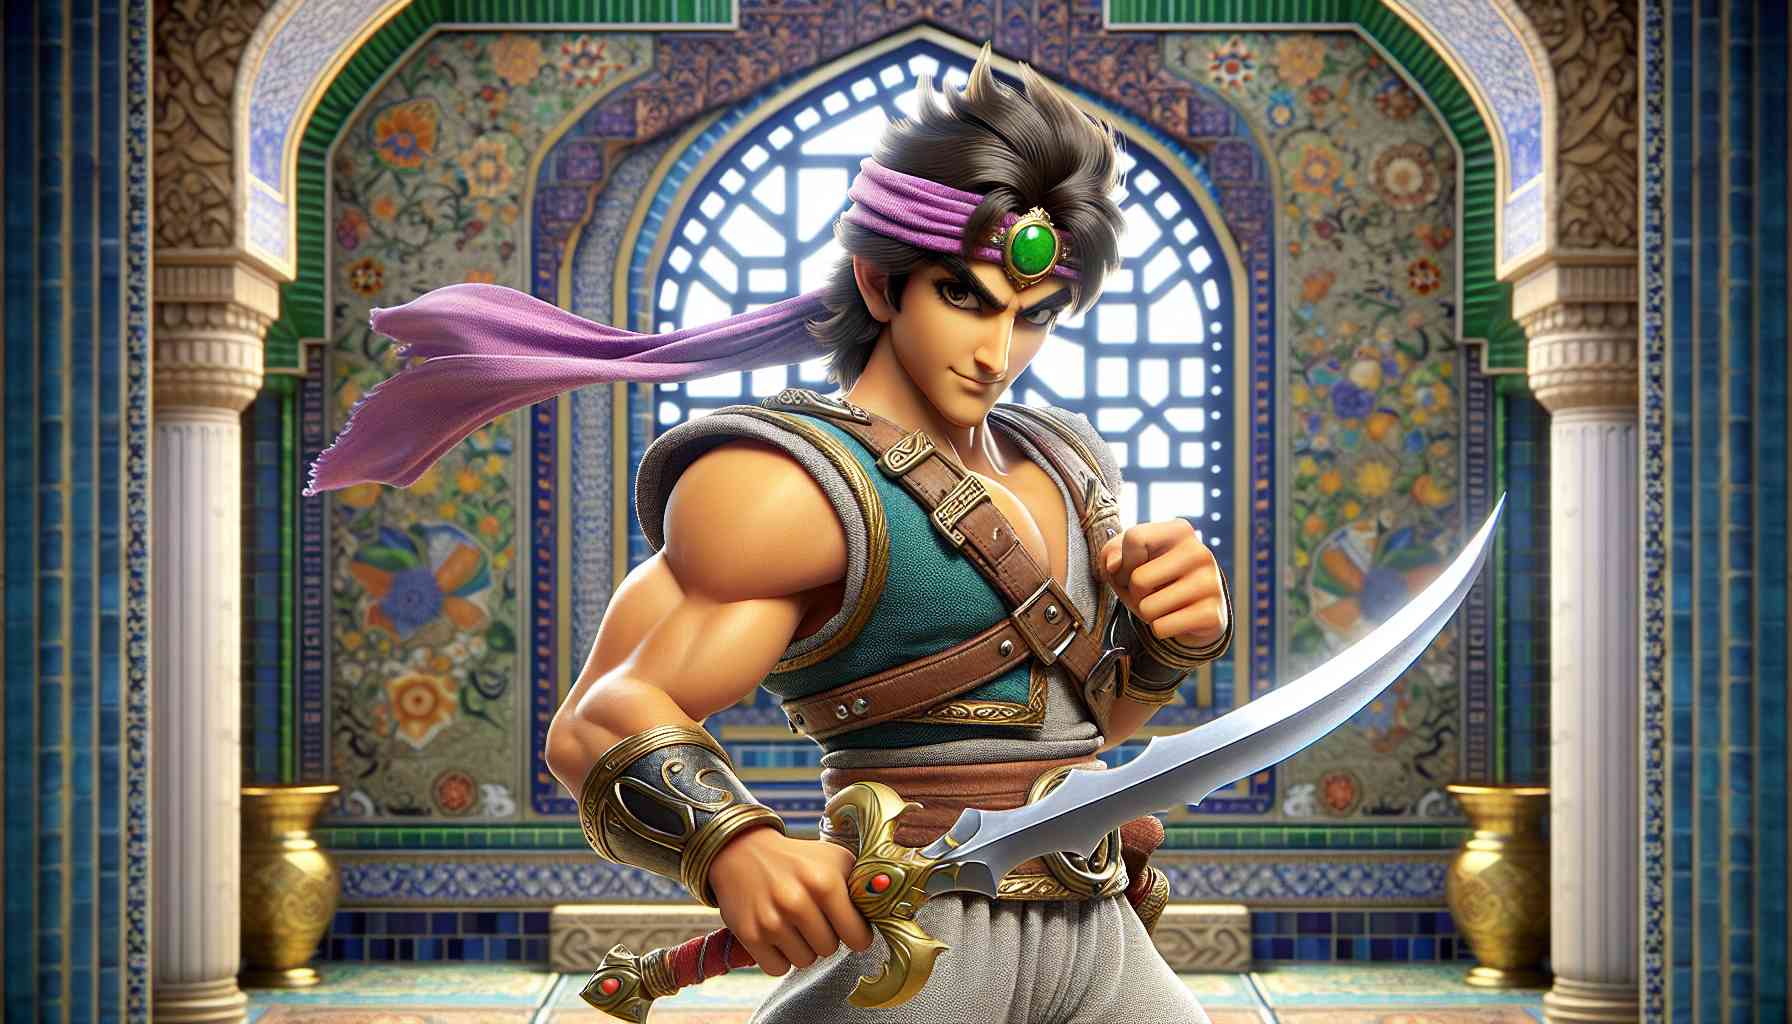 Prince of Persia: Wielki powrót ikonicznej serii gier platformowych